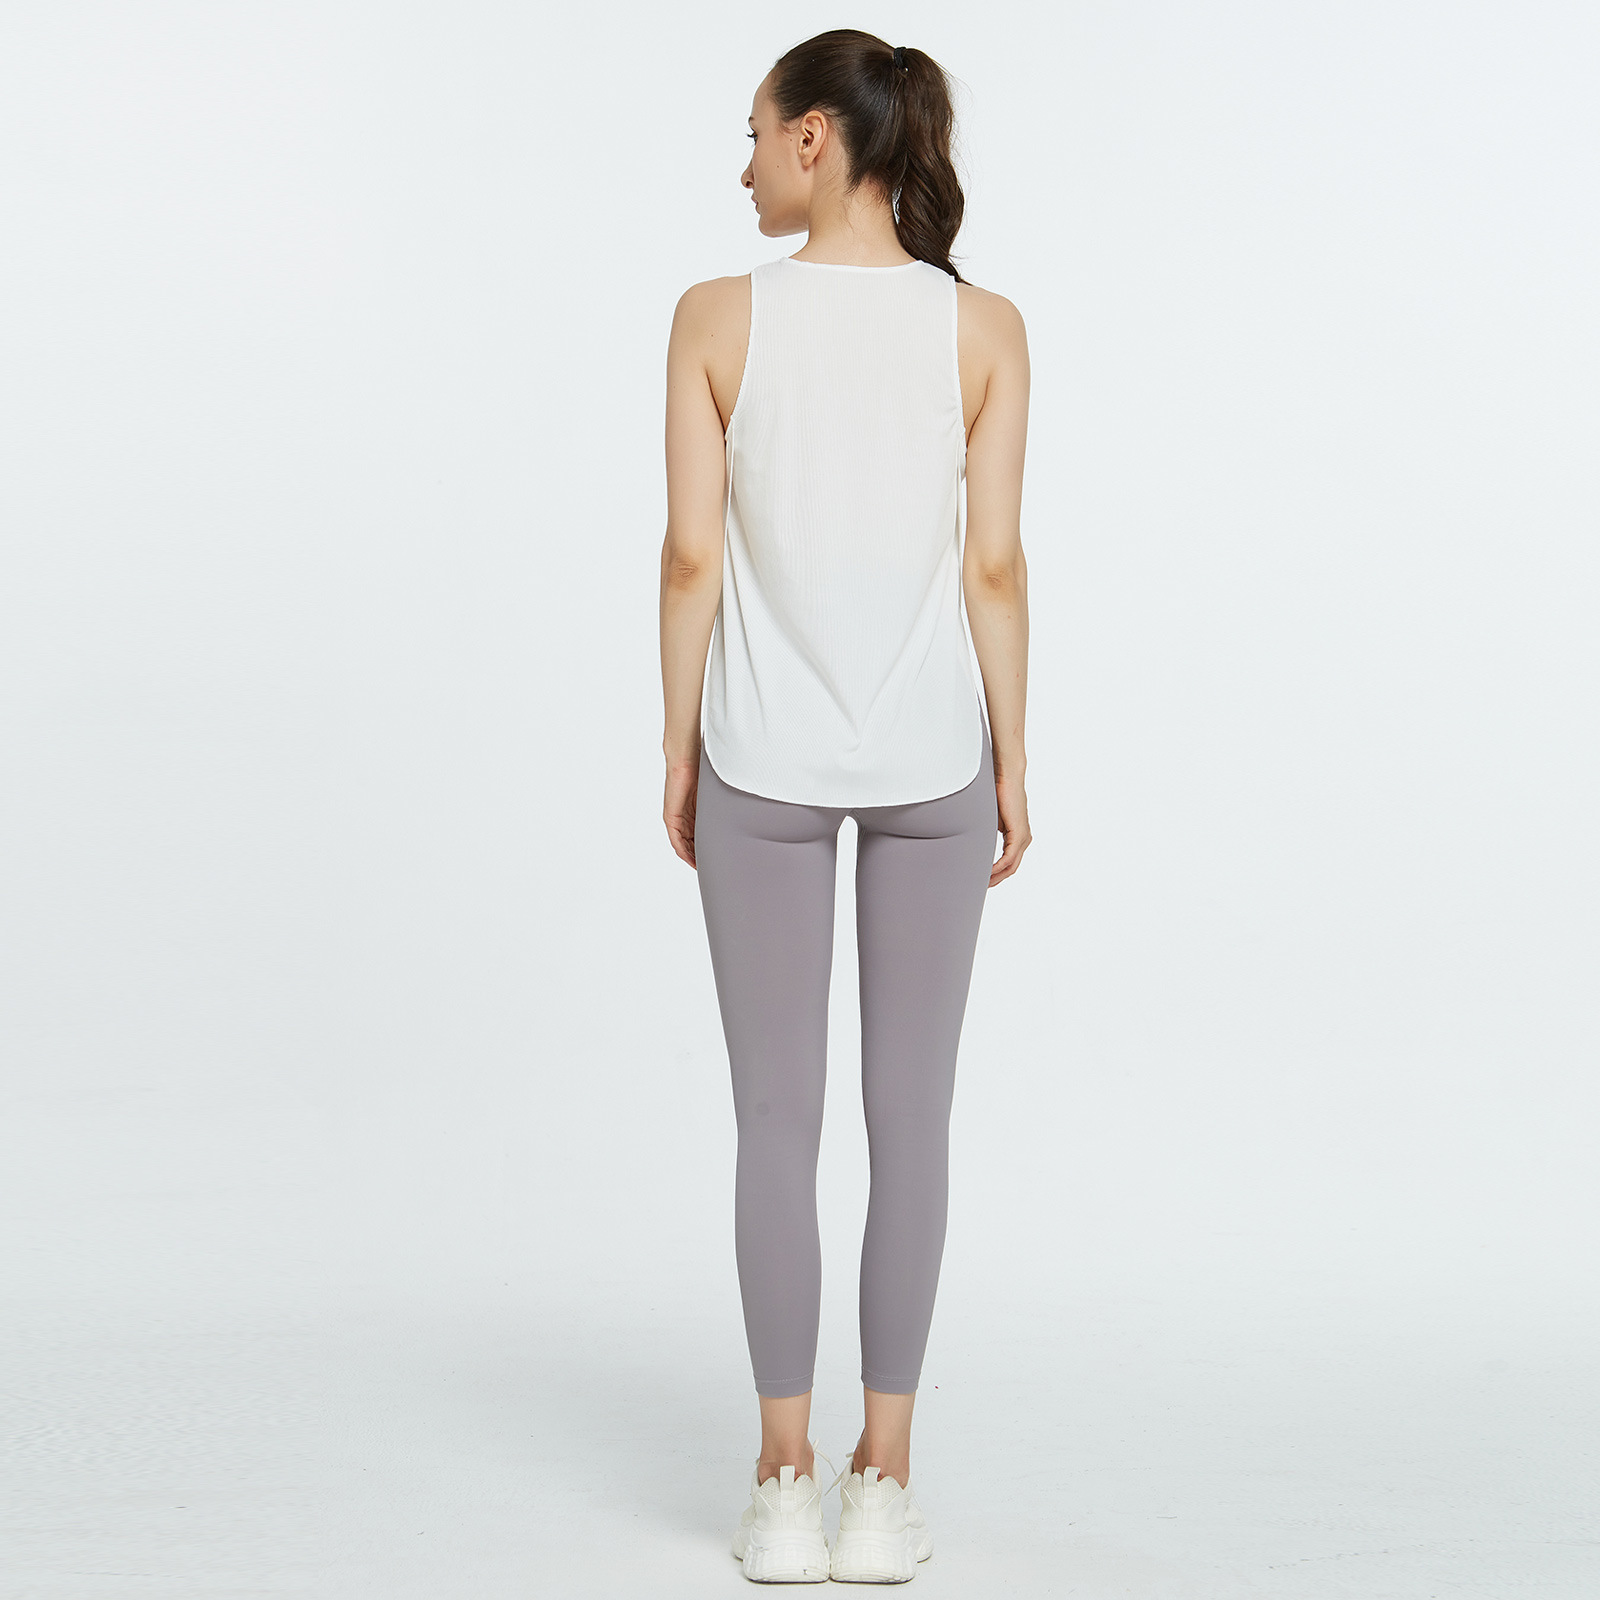 high-elastic round neck loose solid color/tie-dye yoga vest (multicolor) NSFH126790